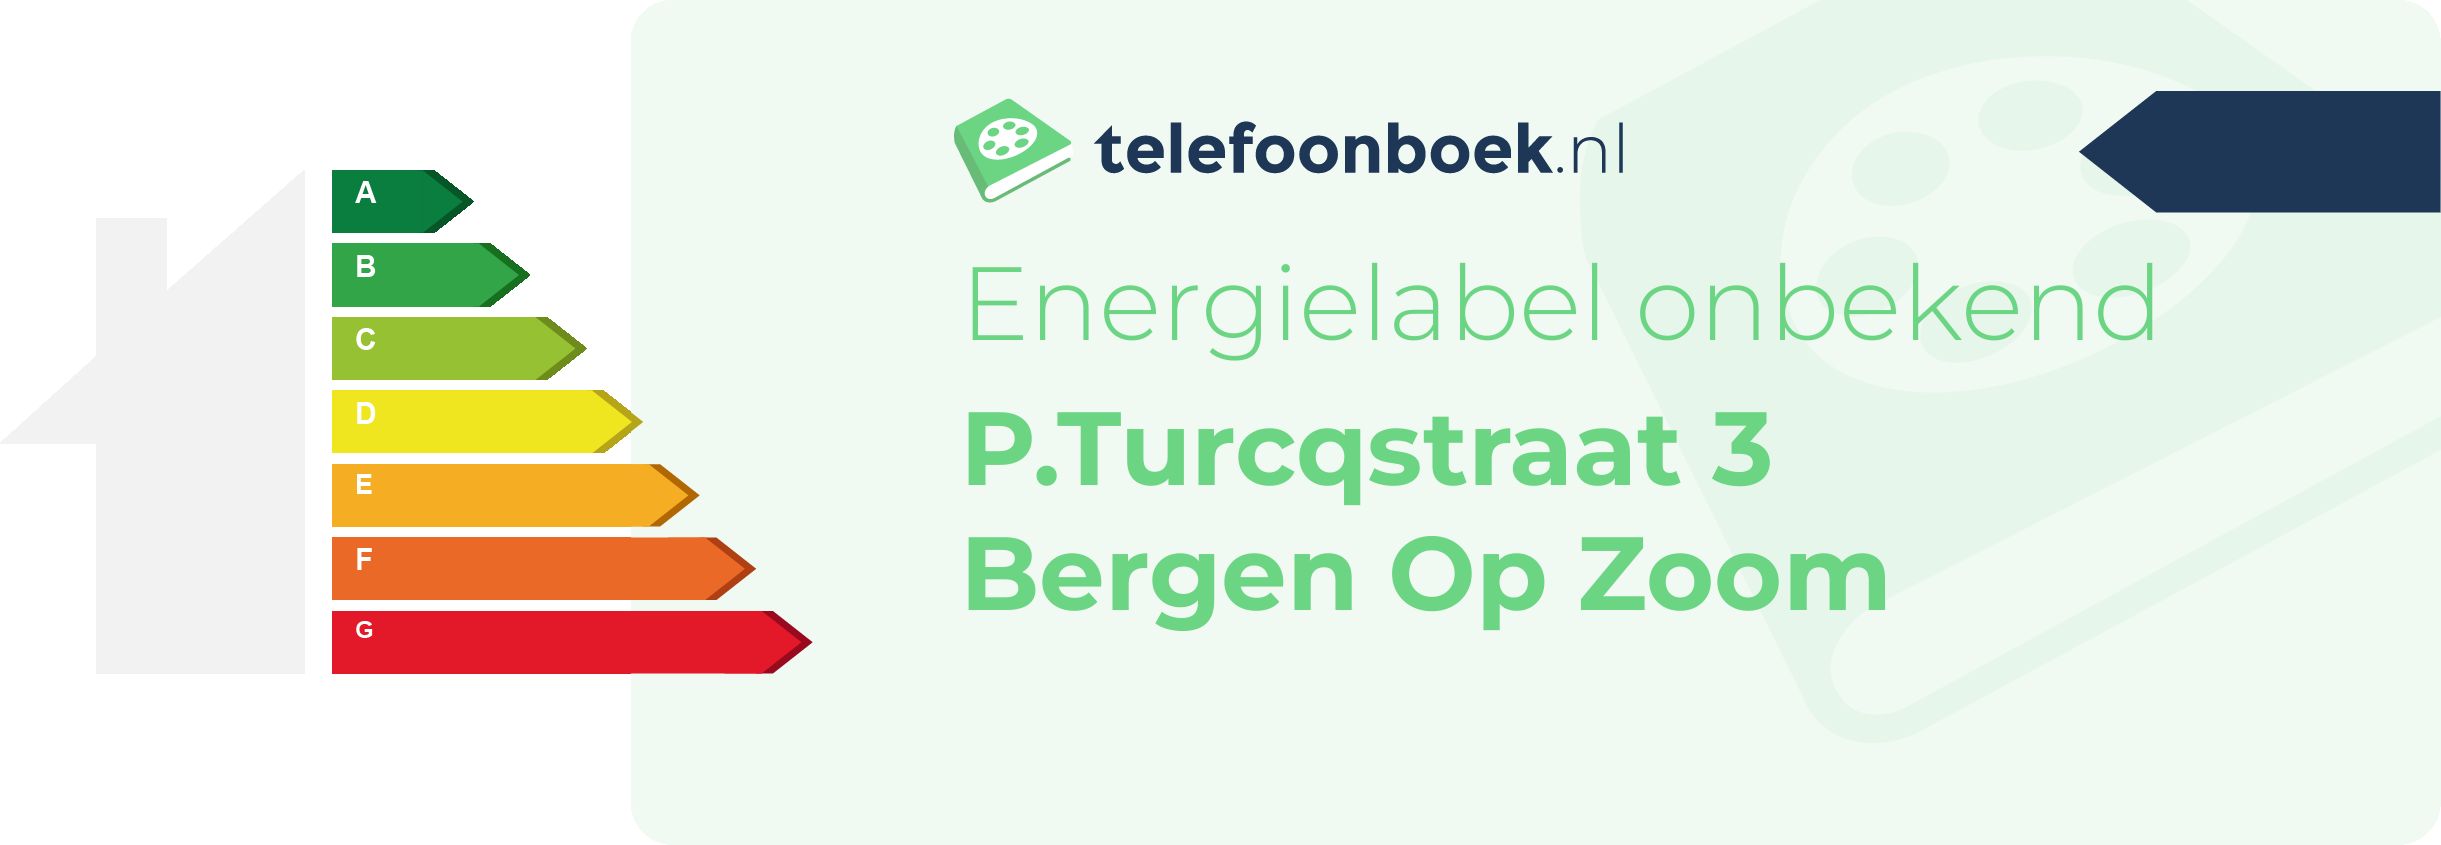 Energielabel P.Turcqstraat 3 Bergen Op Zoom